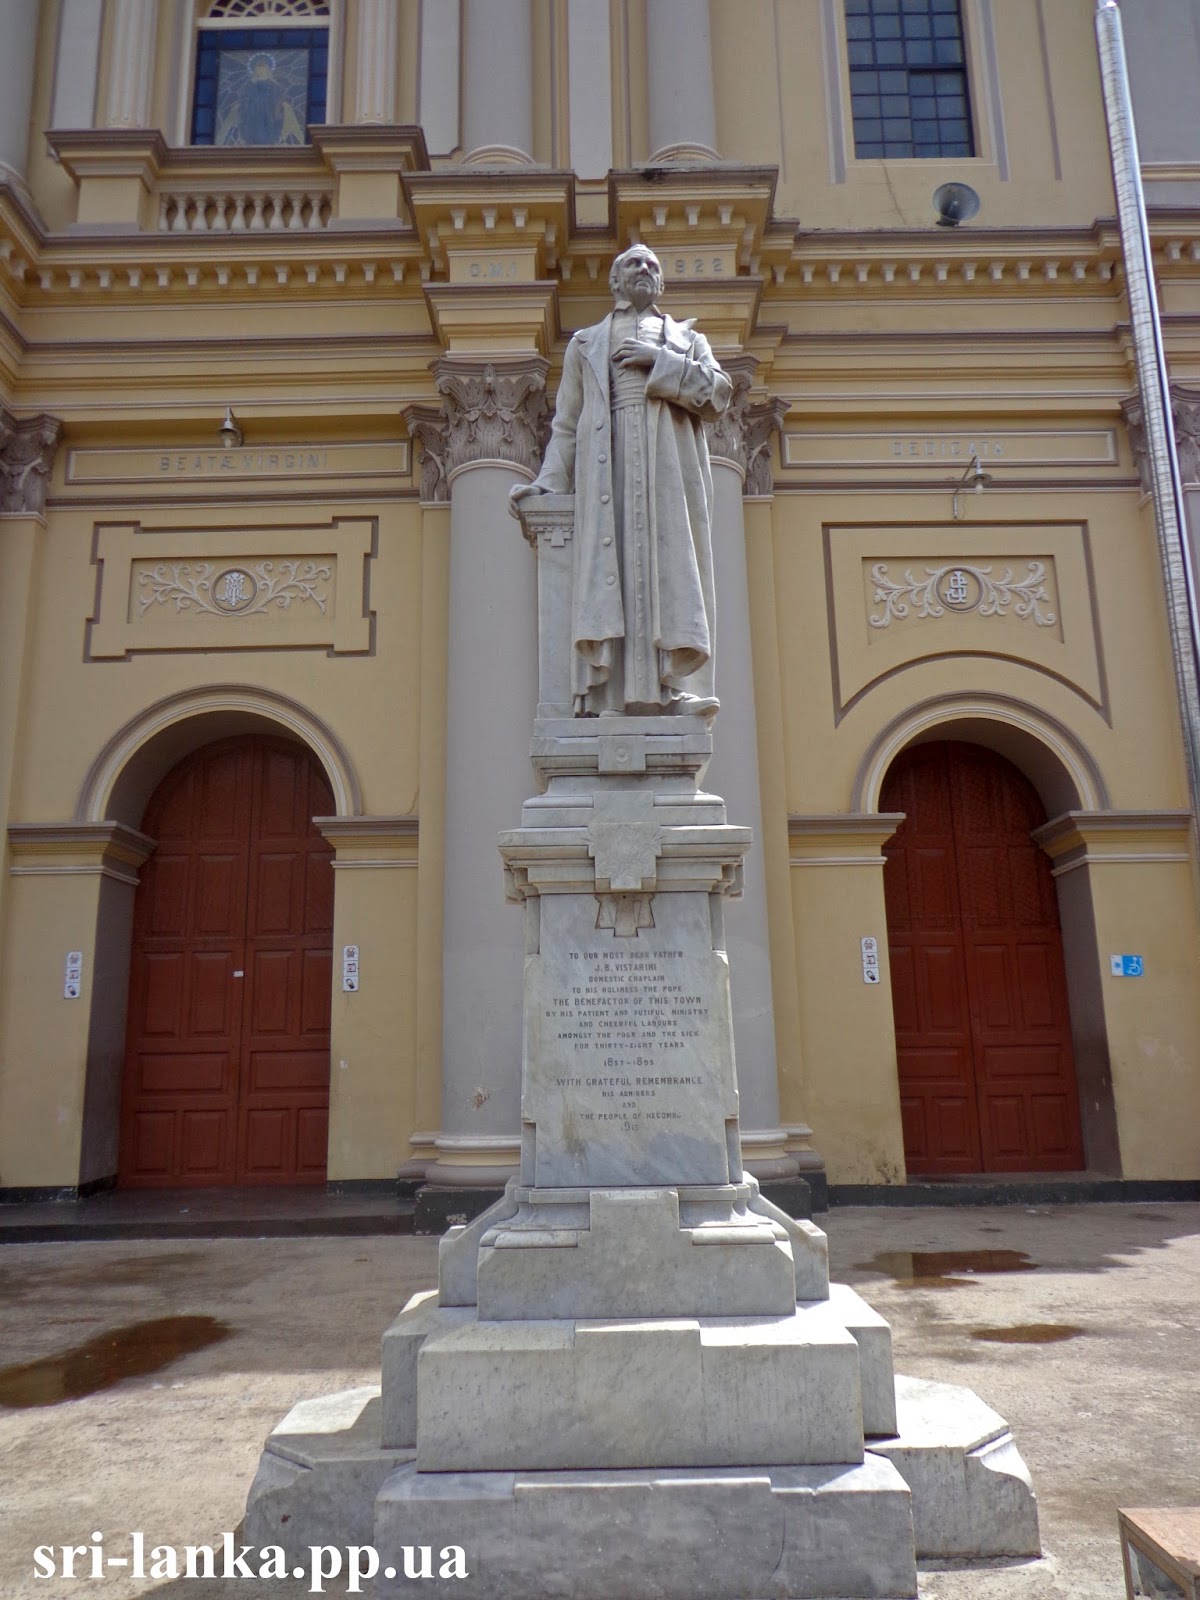 Памятник священнику Джону Вистарини в Негомбо